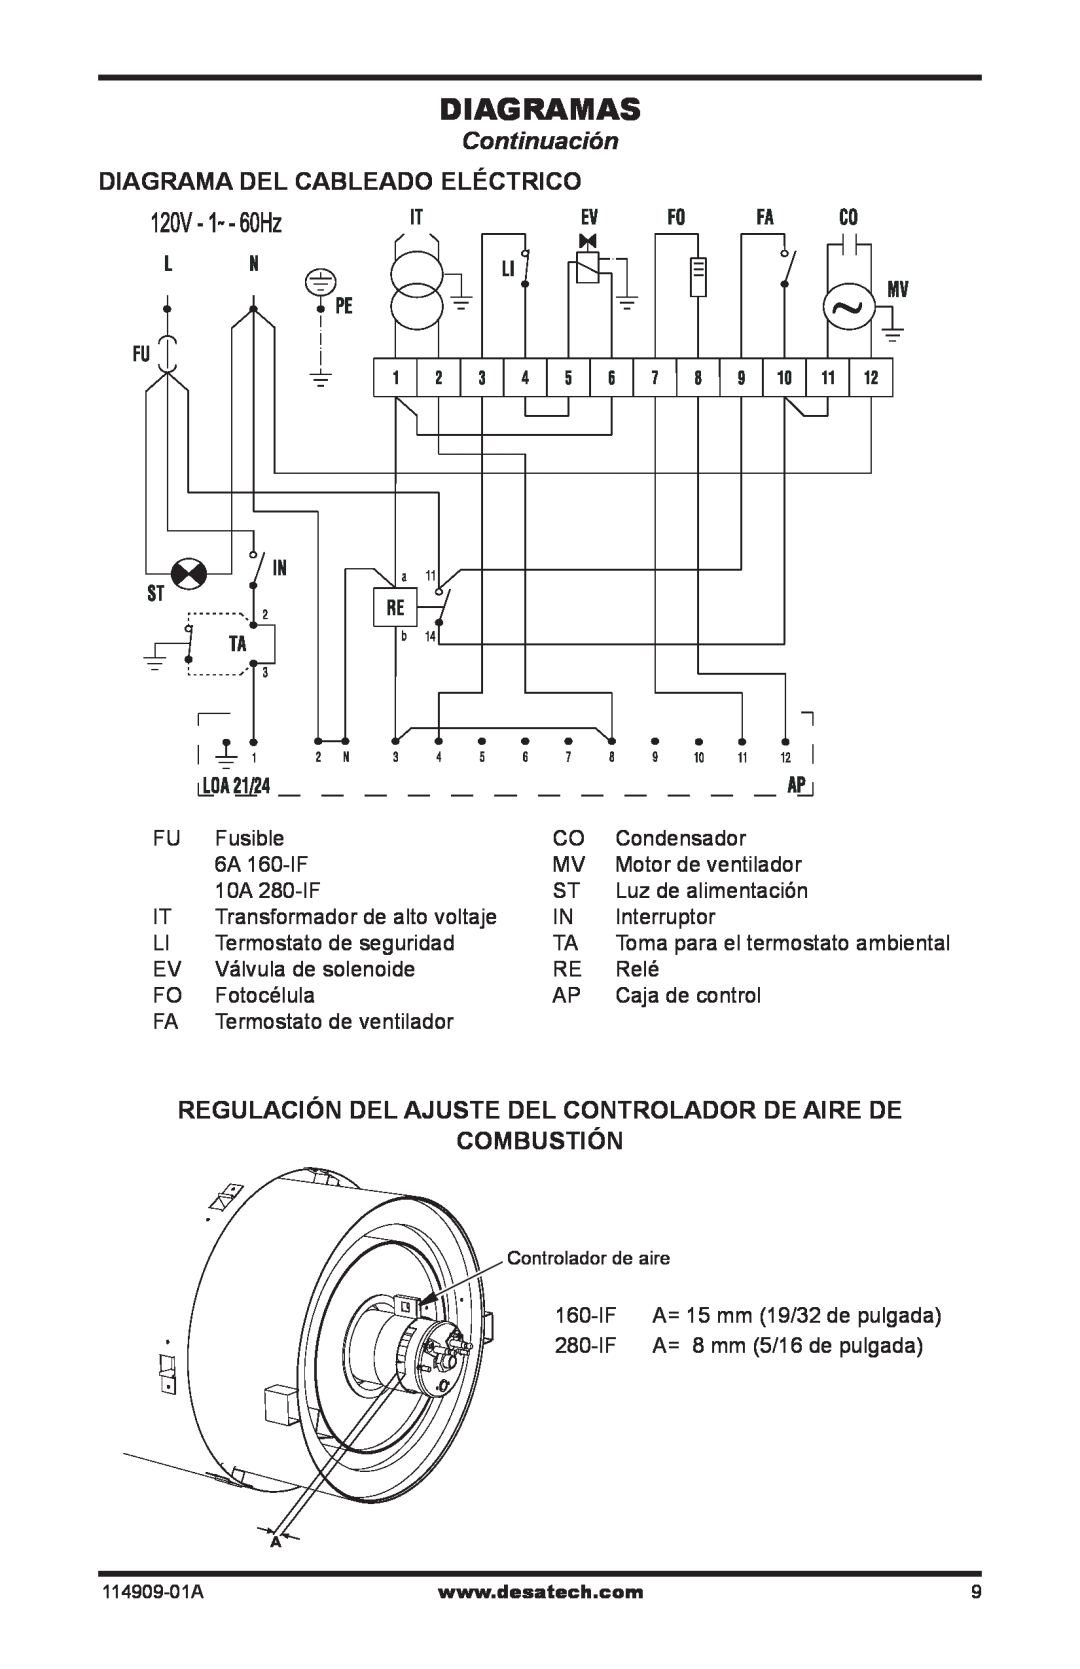 Desa 160-IF Diagramas, Continuación, Diagrama Del Cableado Eléctrico, Regulación Del Ajuste Del Controlador De Aire De 